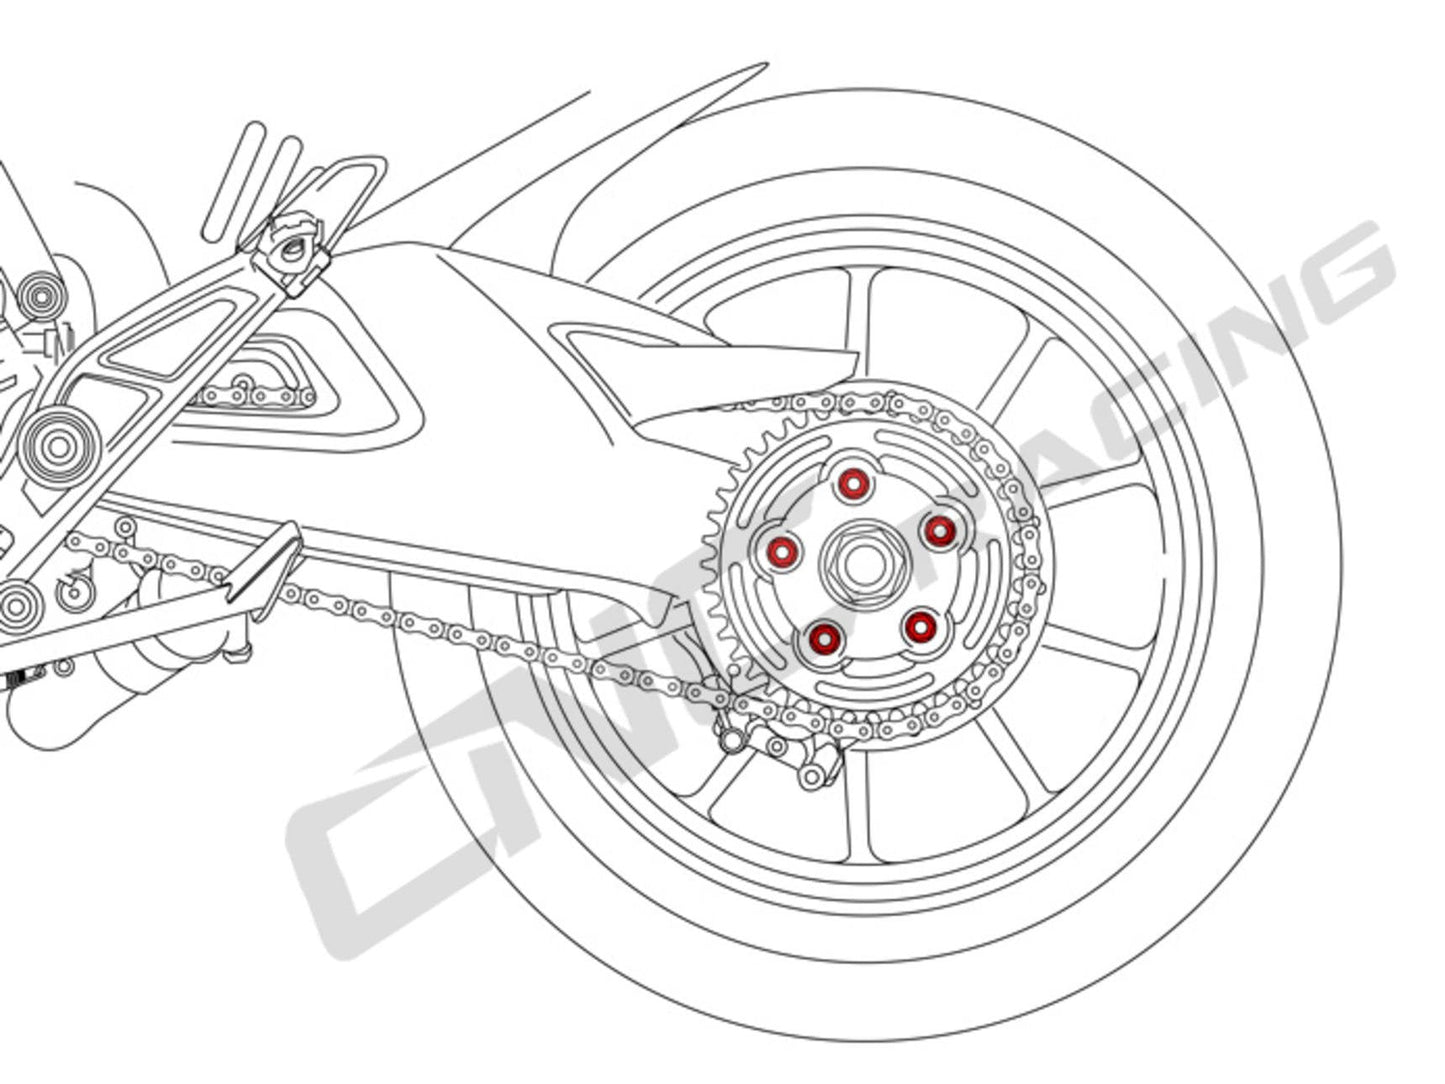 DA383 - CNC RACING Ducati Rear Sprocket Nuts (M10x1.25)